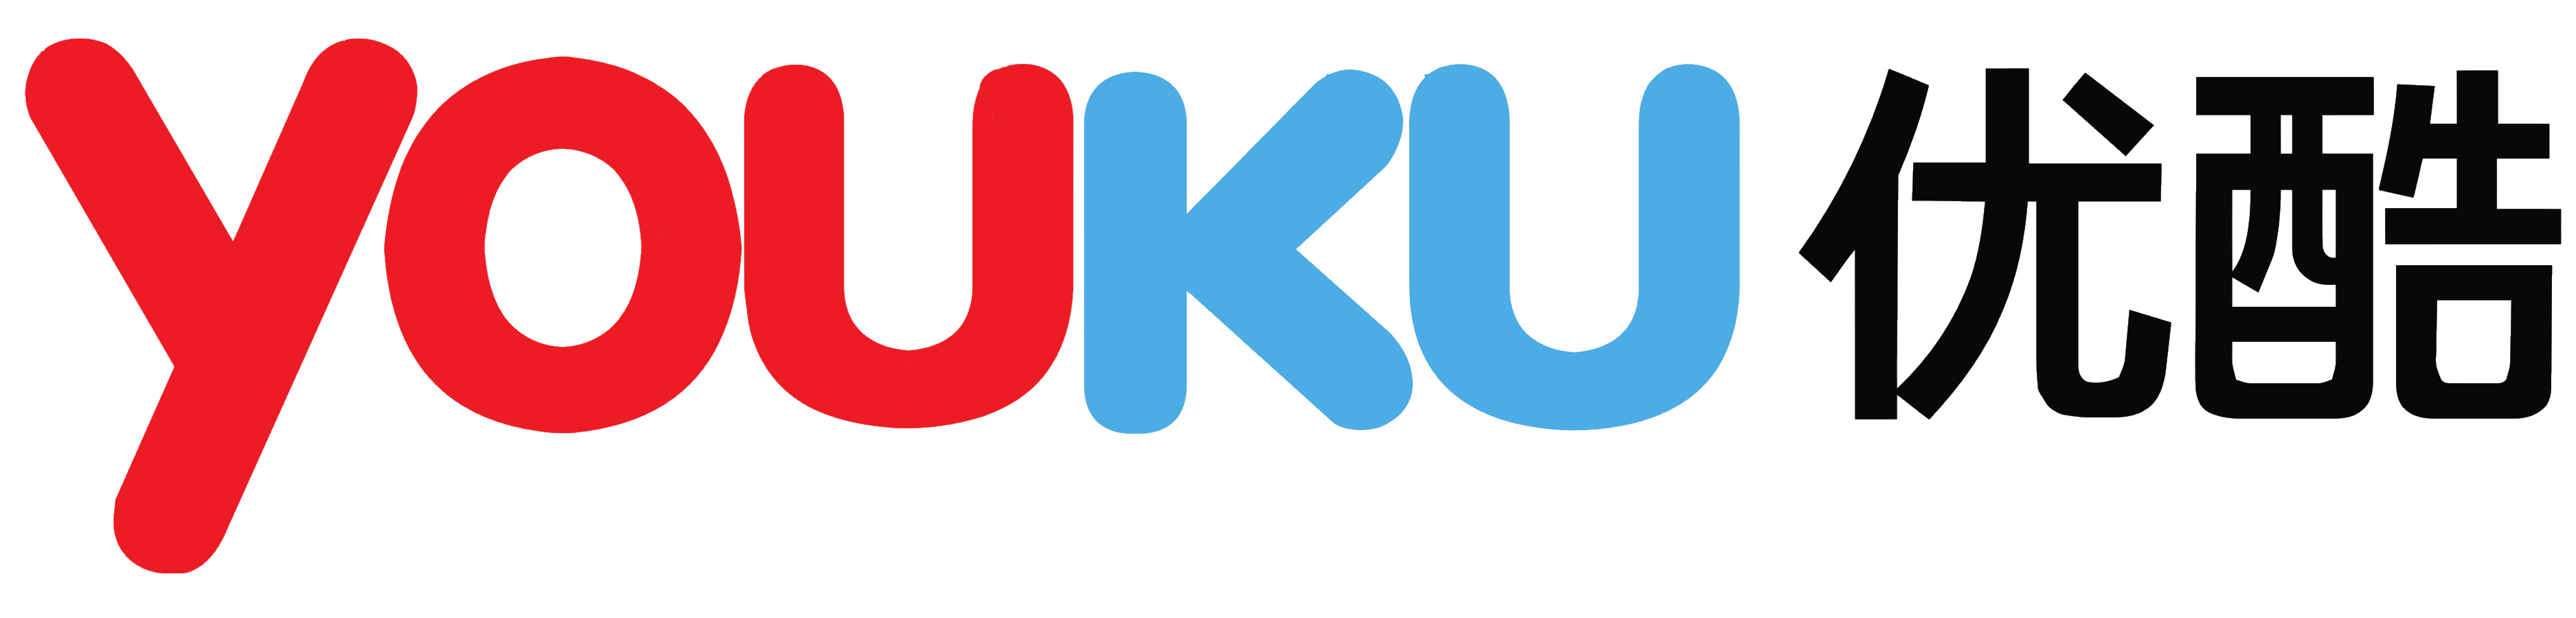 Logo Youku PNG - 98523